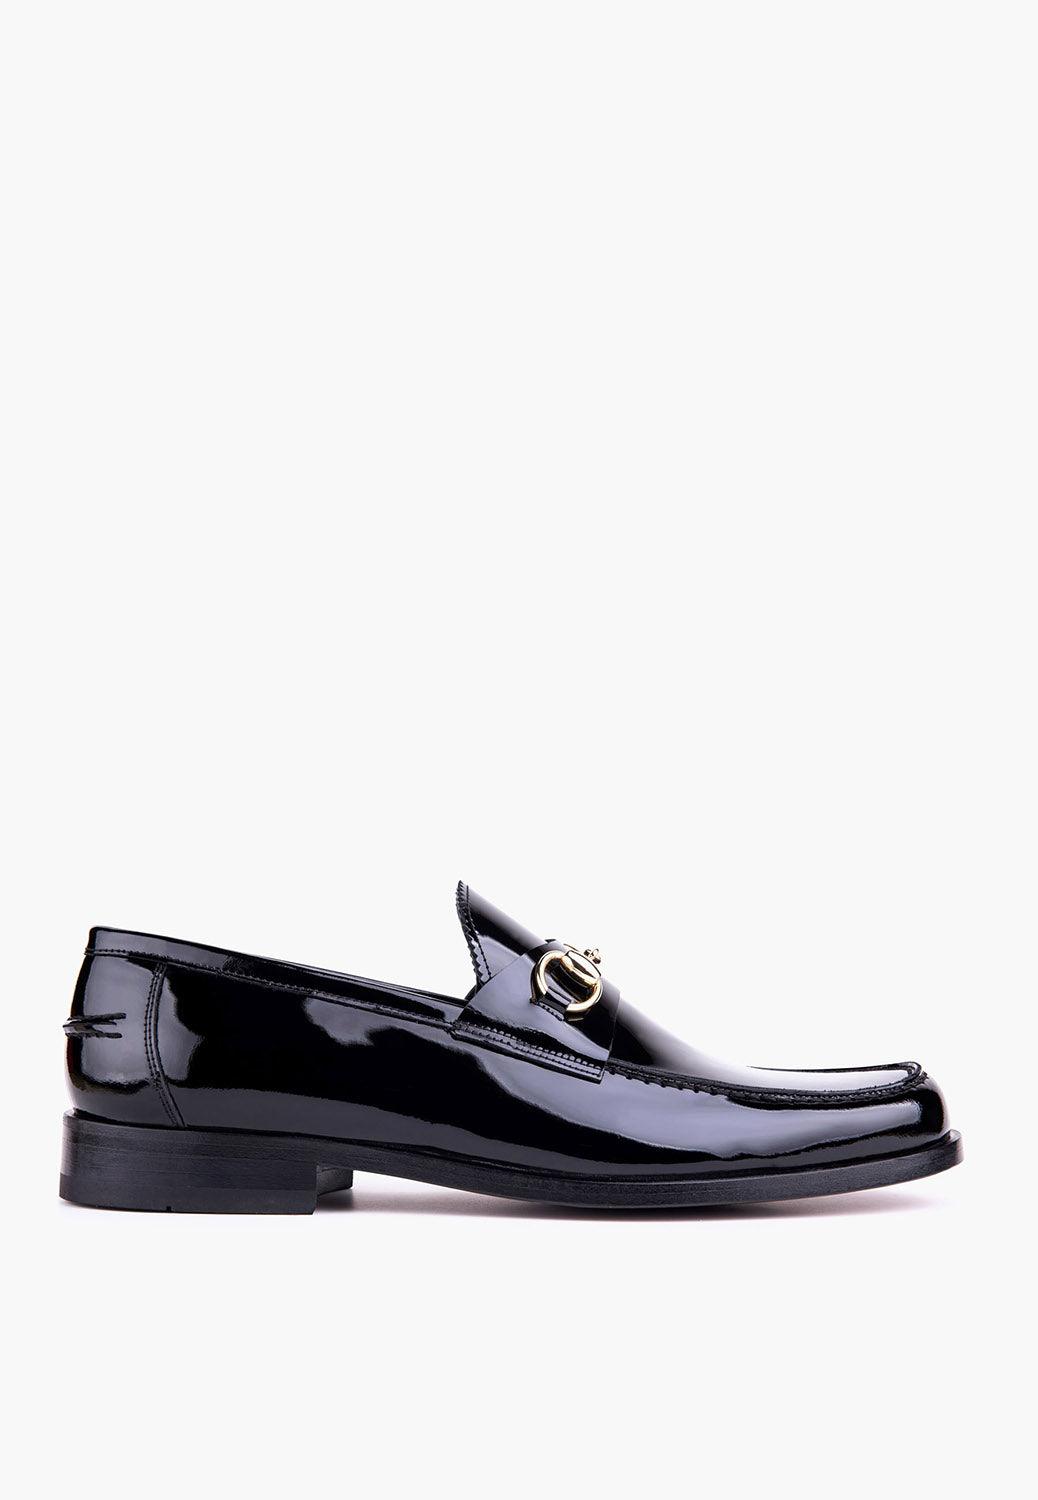 Ceremony Loafer Black - SEPOL Shoes